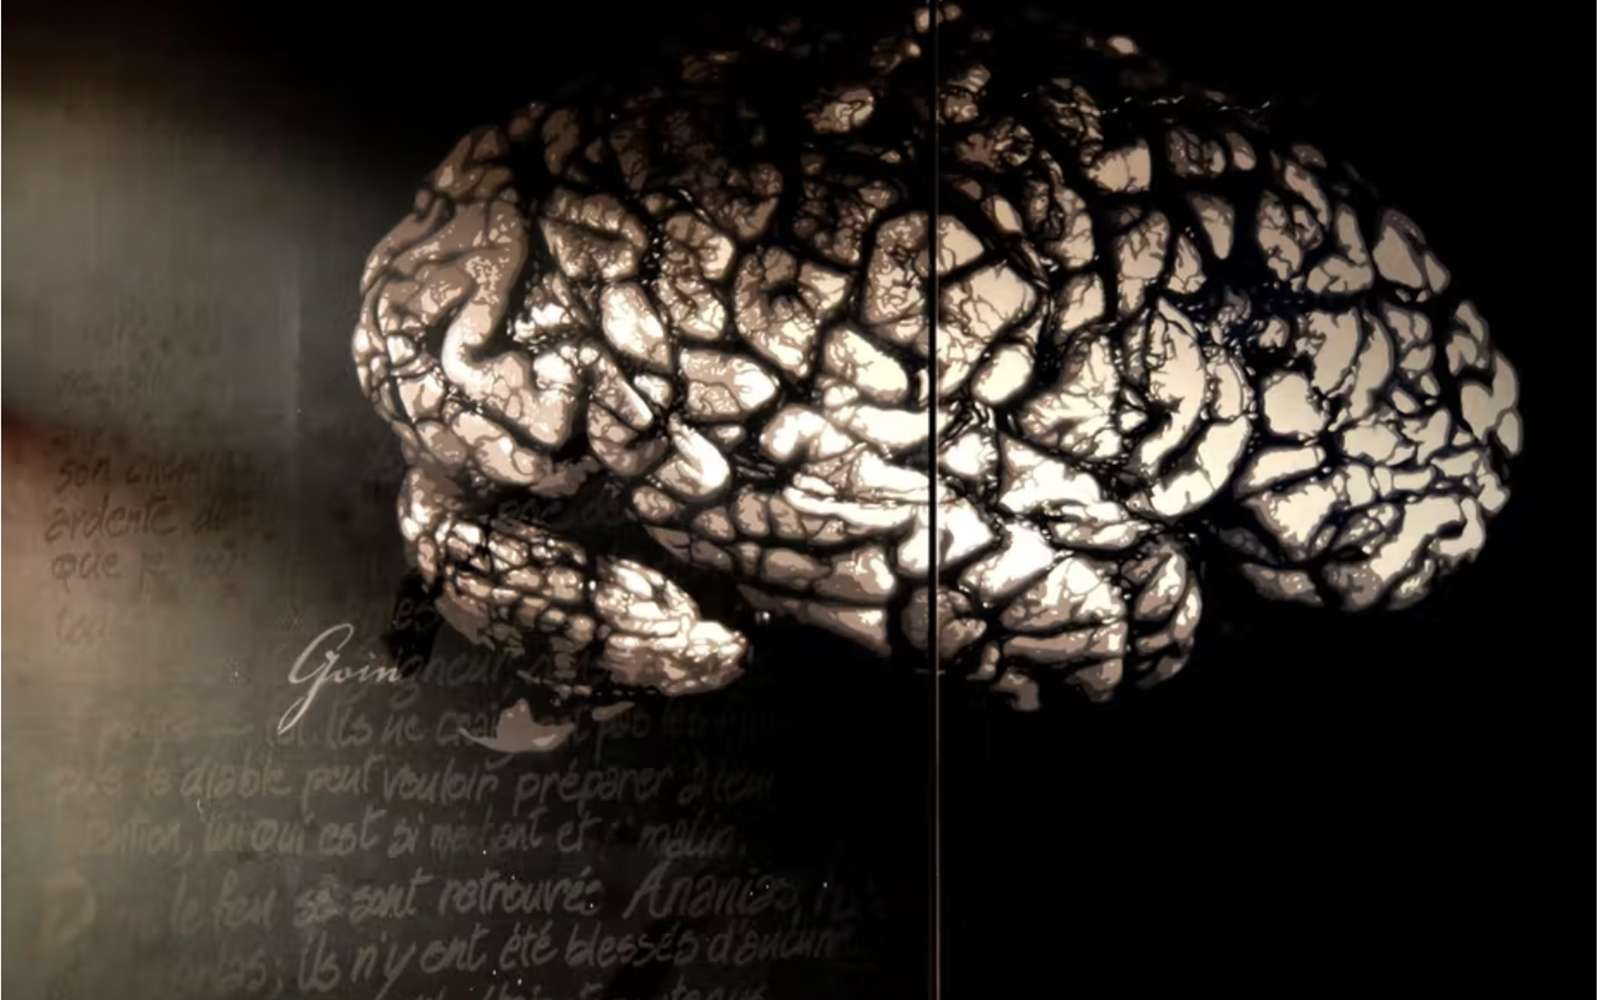 Il n'existe aucune preuve scientifique pour affirmer que la stimulation du cerveau agit sur la performance physique. © Thierry Ehrmann, Flickr